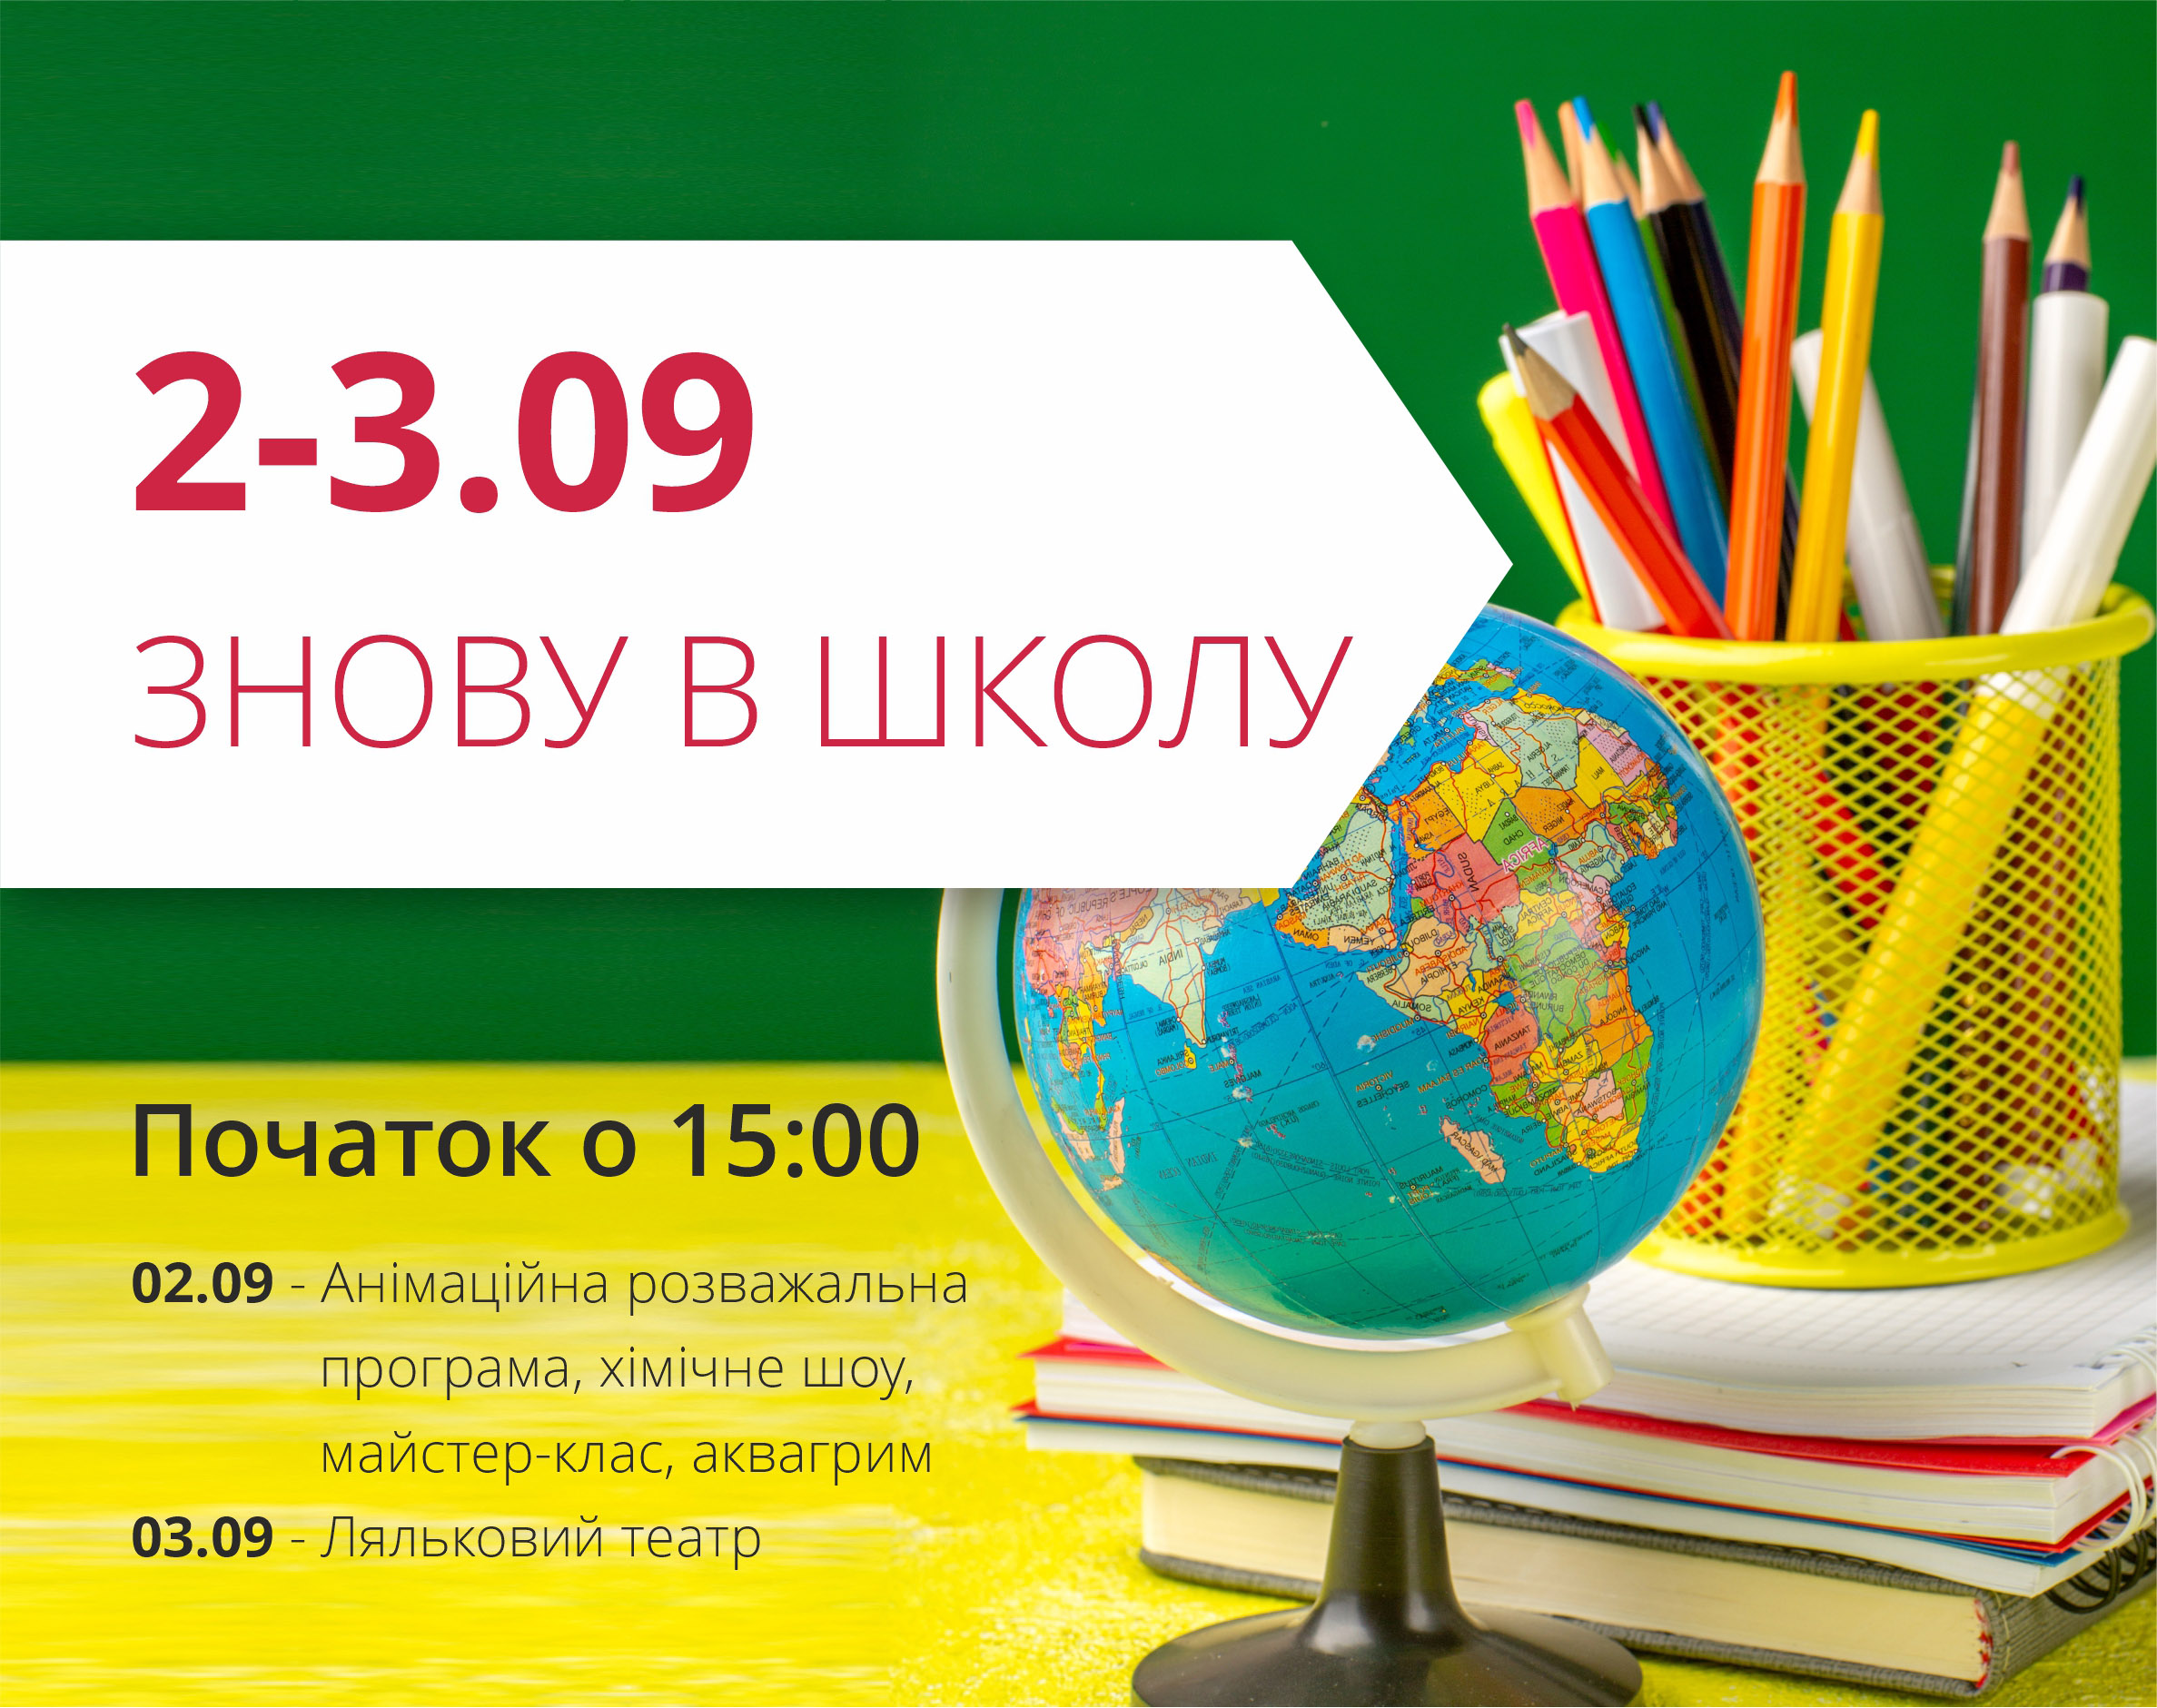 ТРЦ "Любава" приглашает на первый осенний уикенд